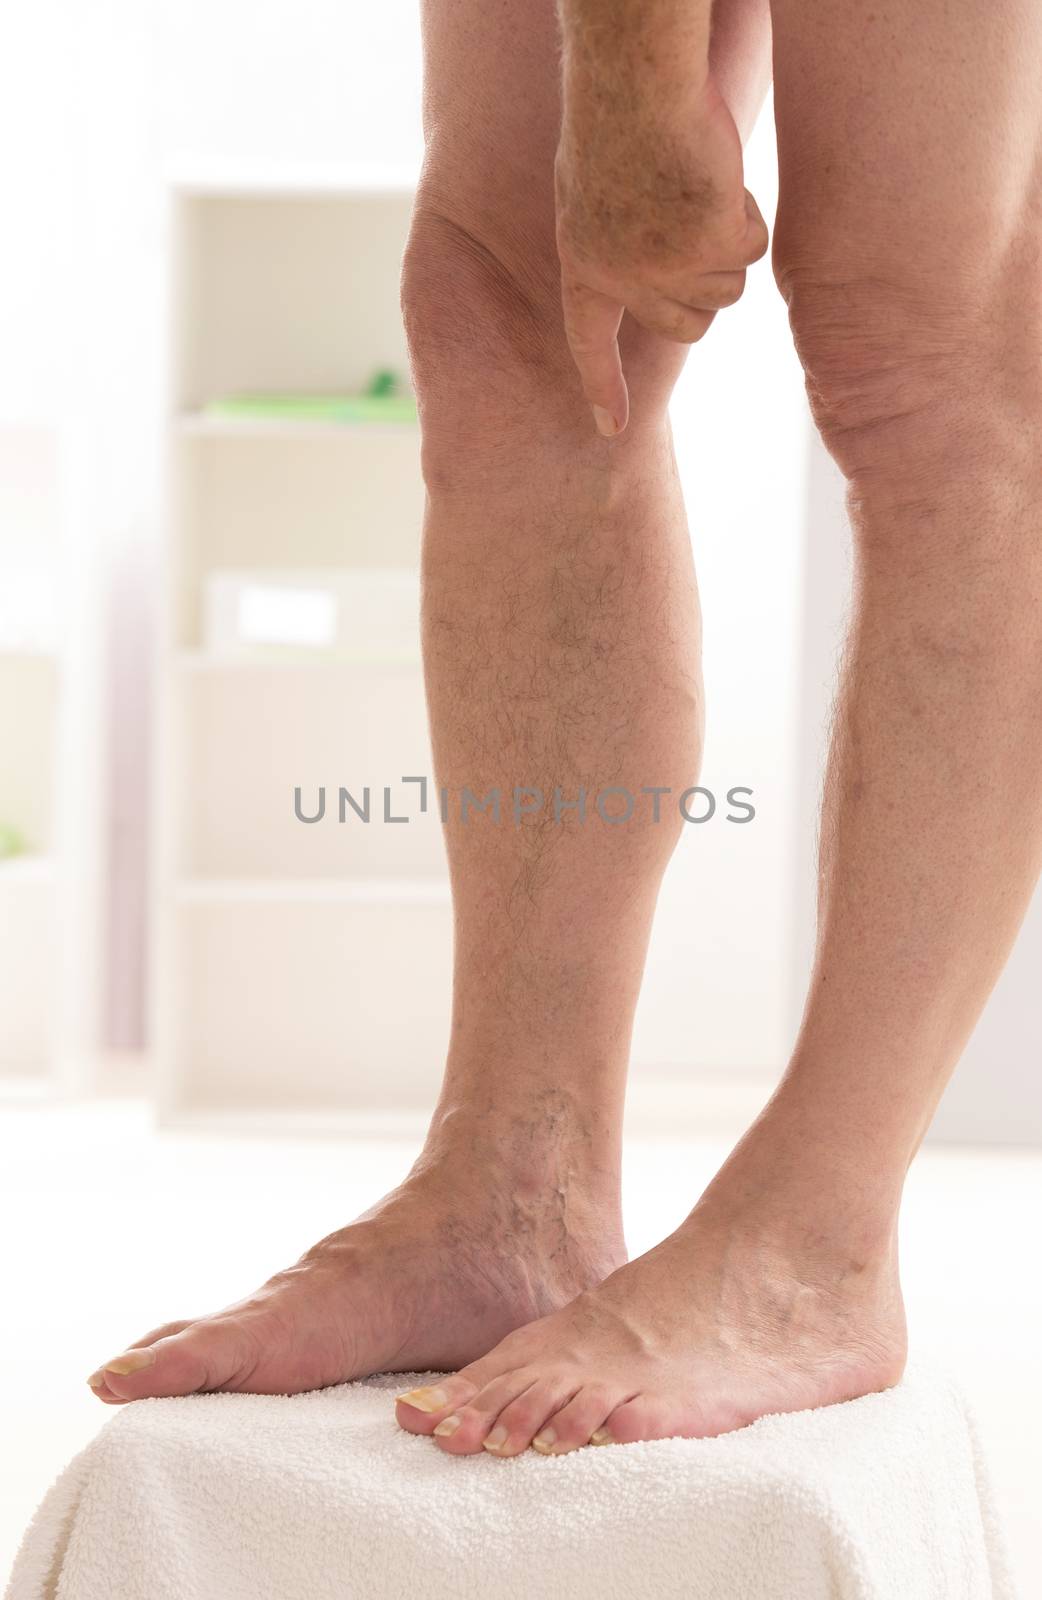 Varicose veins closeup, foot on modular bath step